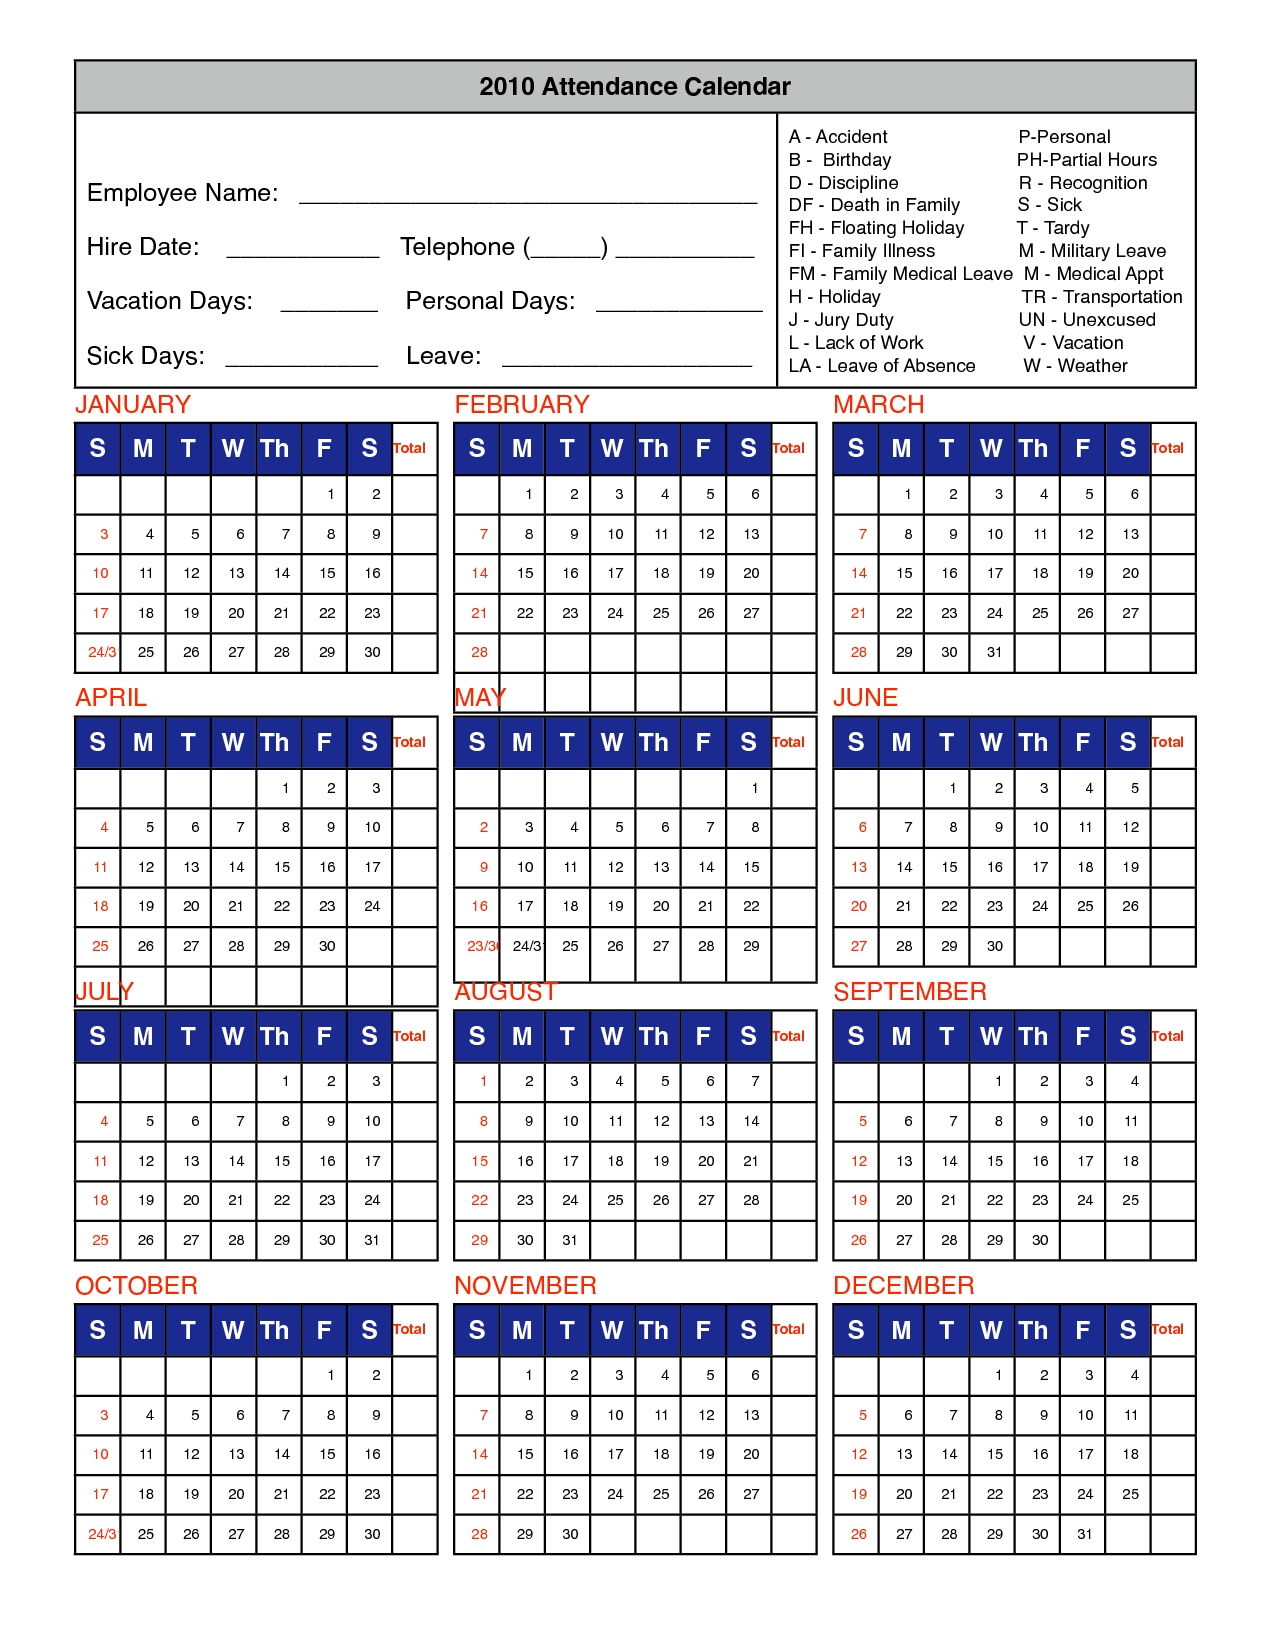 2020 Attendane Tracking Calendar – Template Calendar Design